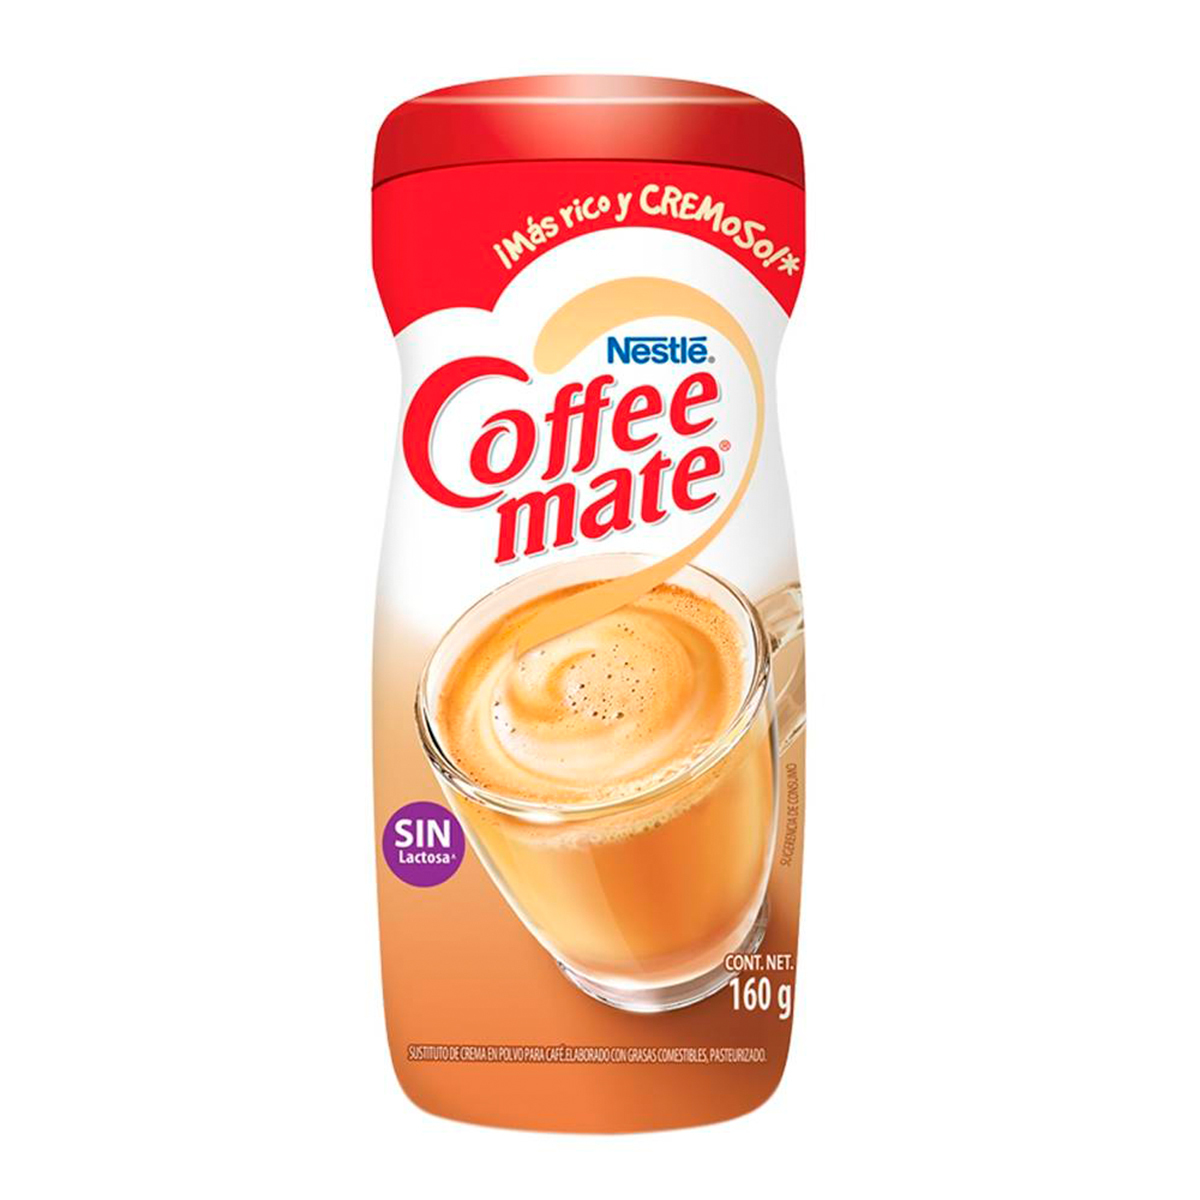 Crema para café Coffee Mate Original 435g